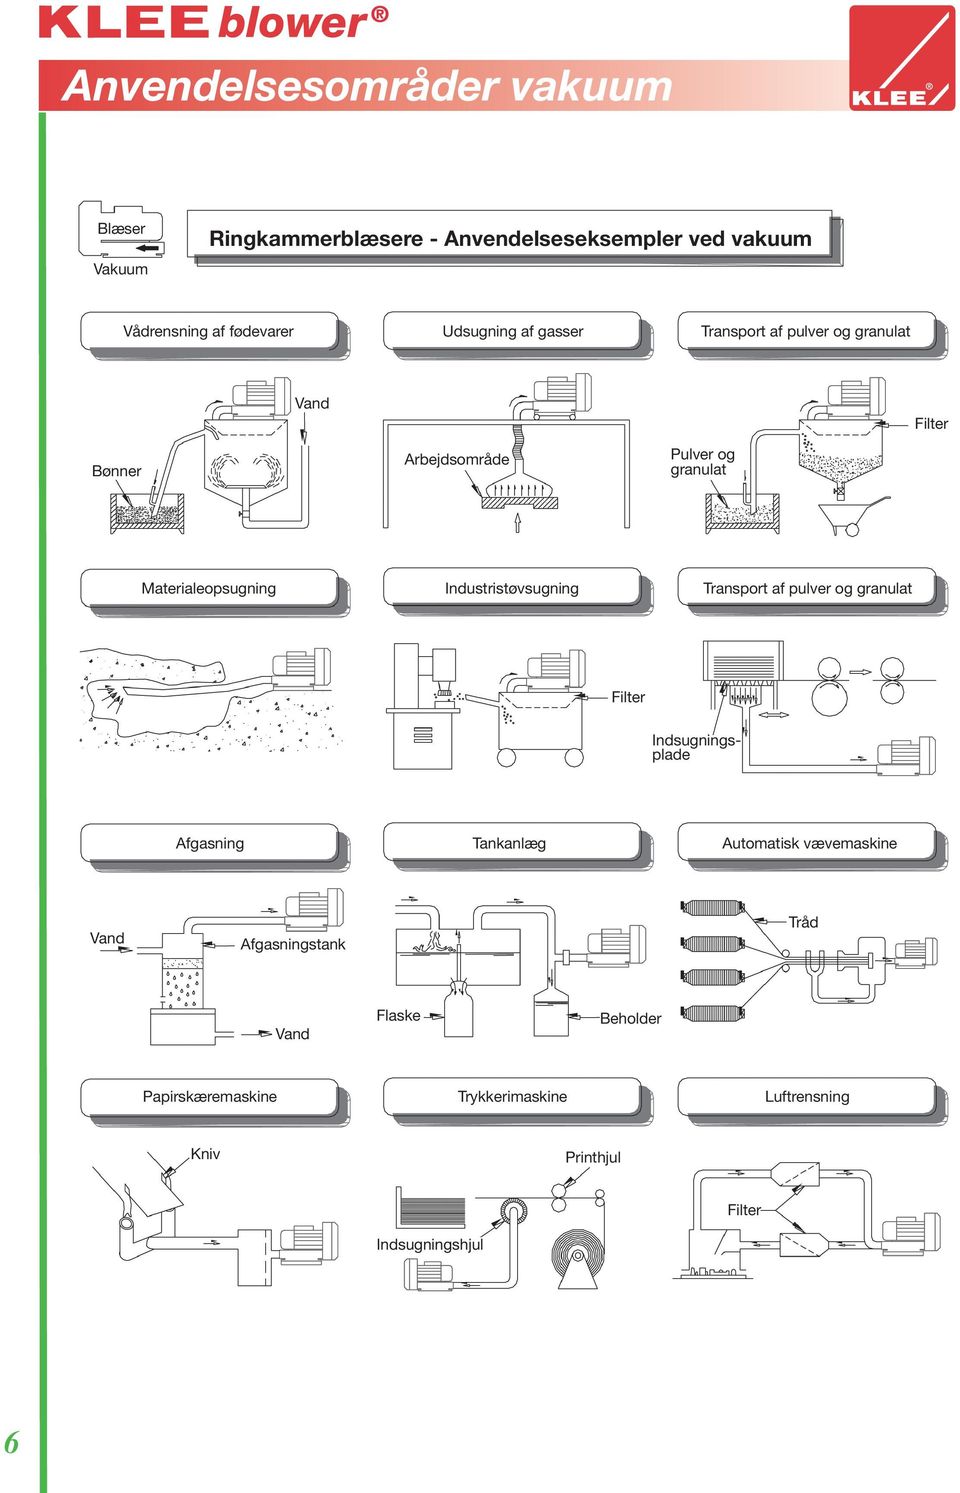 Industristøvsugning Transport af pulver og granulat Filter Indsugningsplade Afgasning Tankanlæg Automatisk vævemaskine